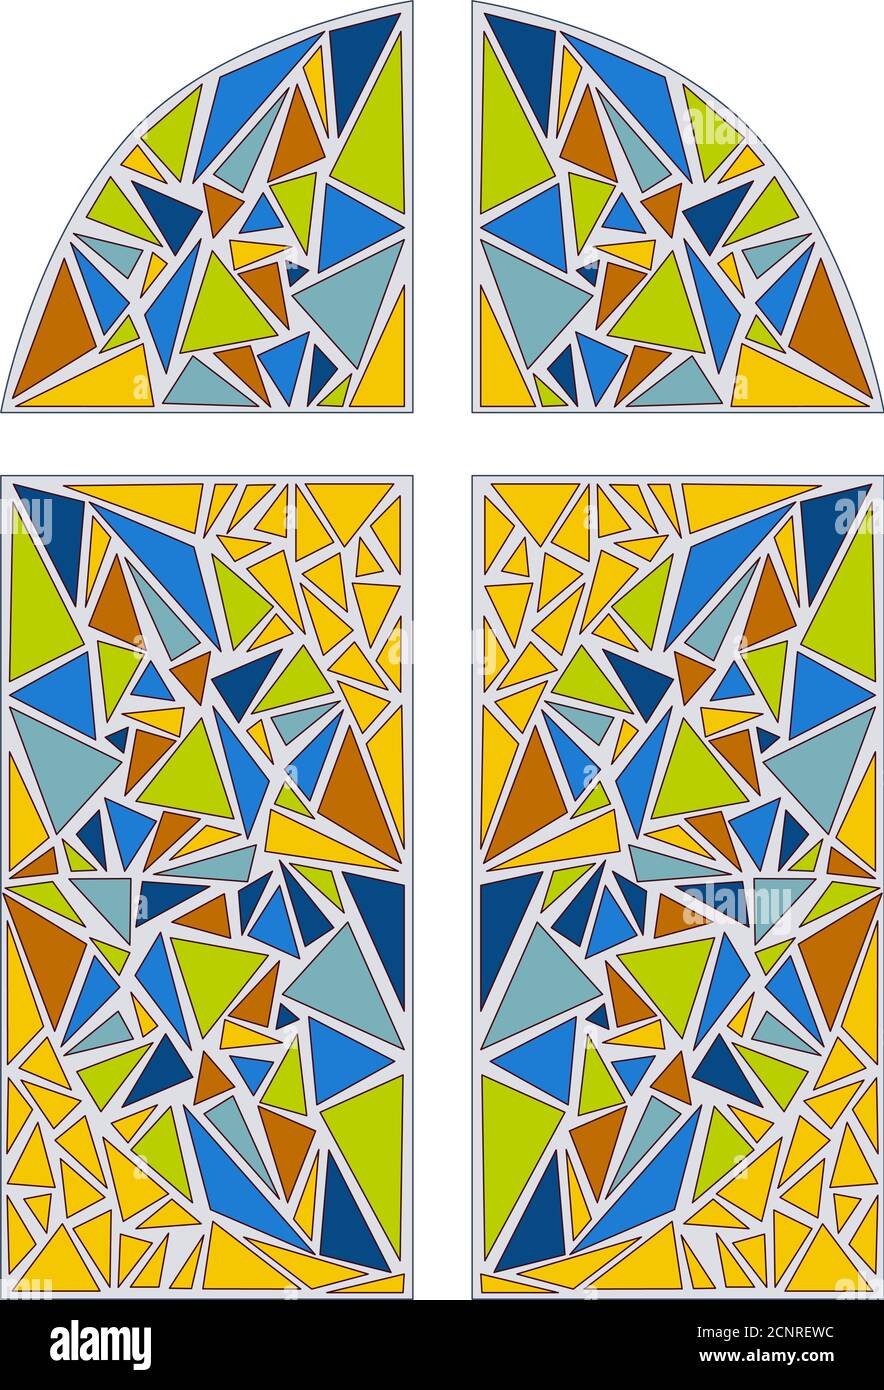 Buntglasfenster. Mosaikmuster. vektorgrafik Stock Vektor